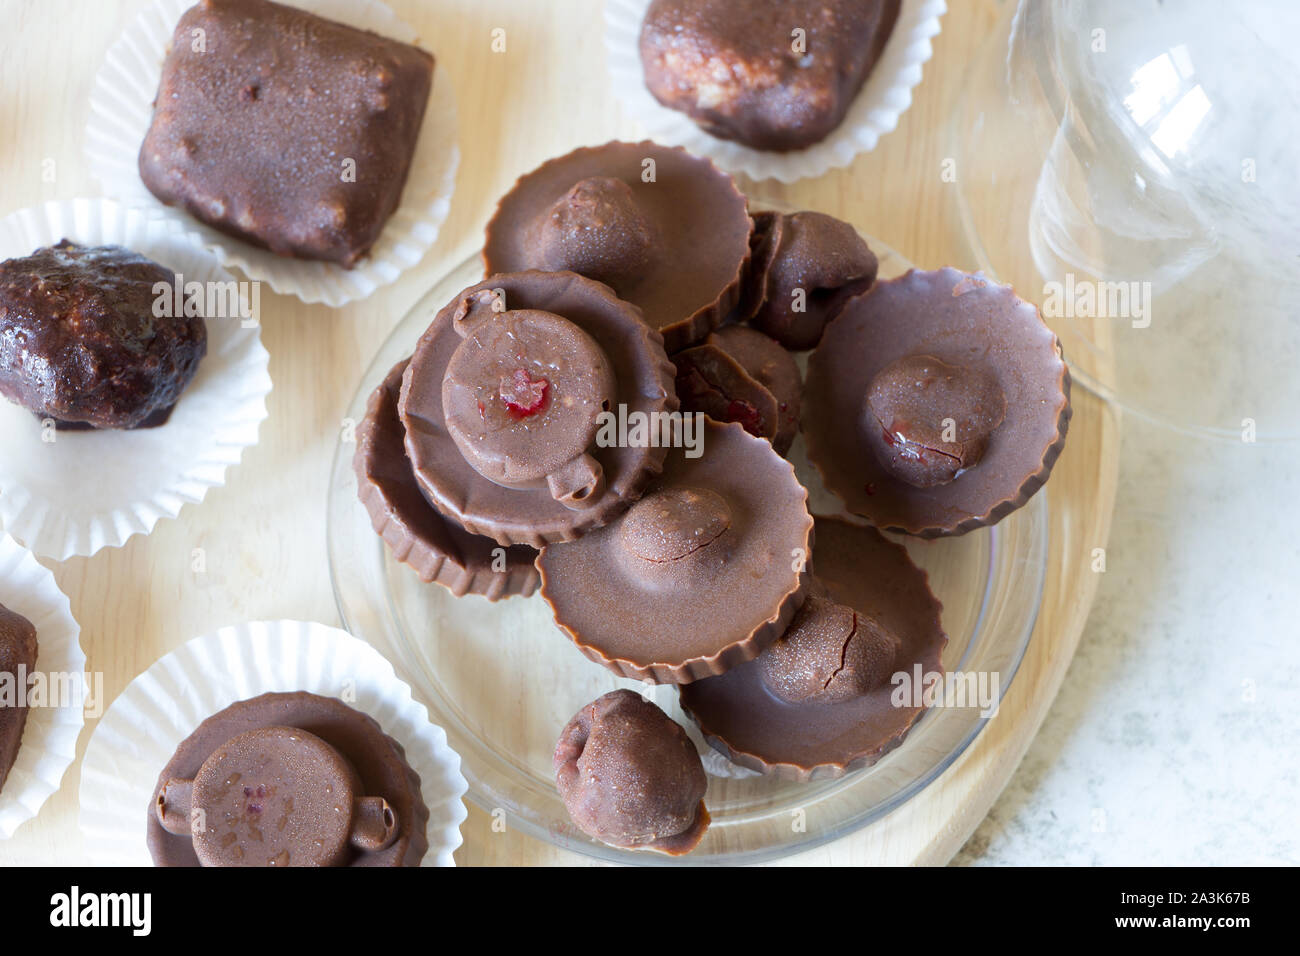 Des matières chocolat sucré bonbons aux framboises à l'intérieur avec des gouttelettes d'eau et de jus de framboise à la surface. Mise à plat. Vue d'en haut. Wraper blanc. Banque D'Images